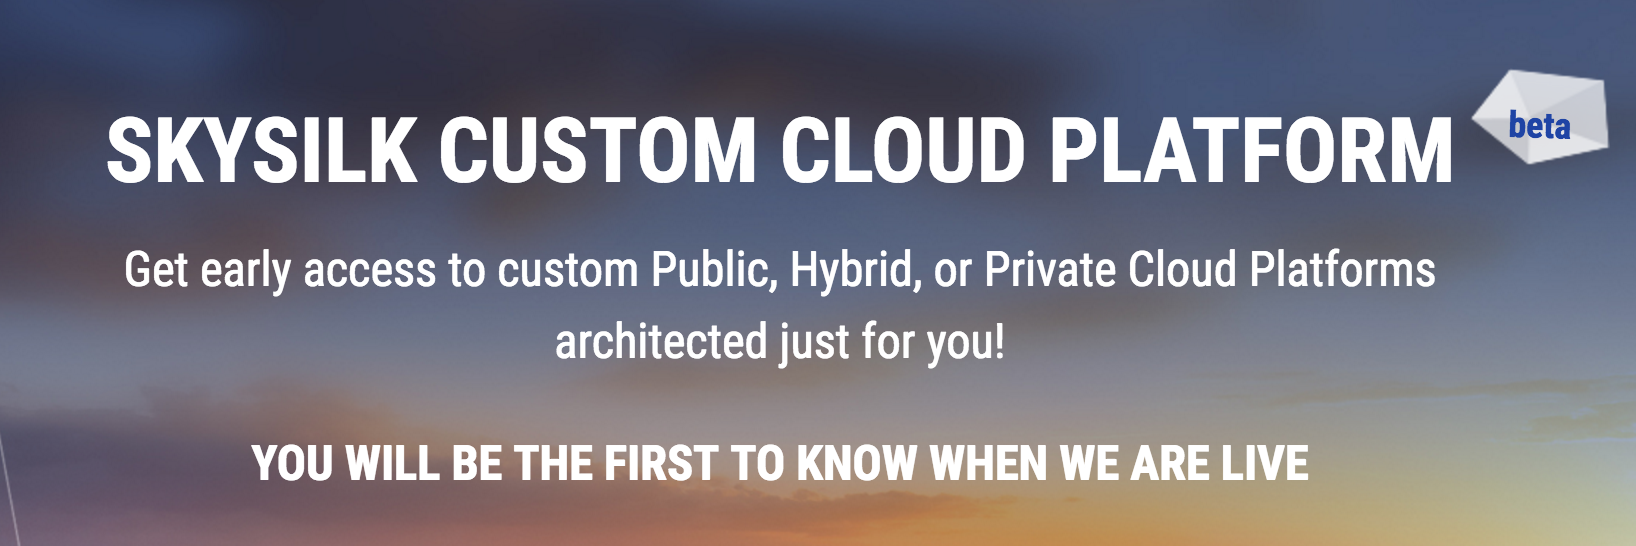 Cloud Platform, Beta Launch, Cloud Services, Free Cloud Resources